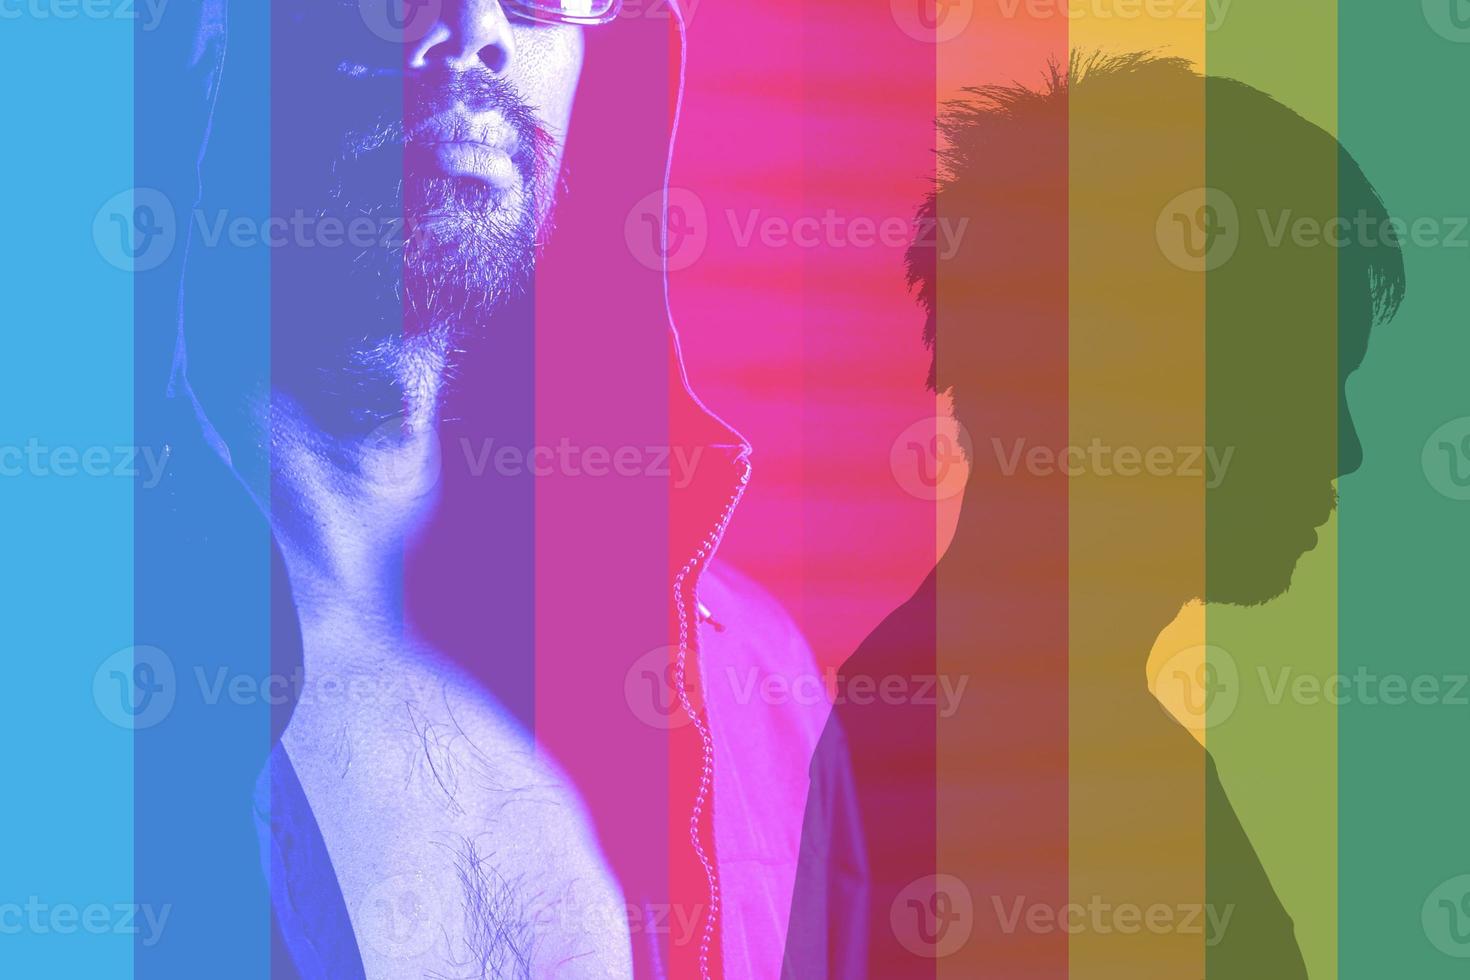 imagem colorida de fundo diversidade de gênero também conhecida como lgbtq, significa lgbtq foto